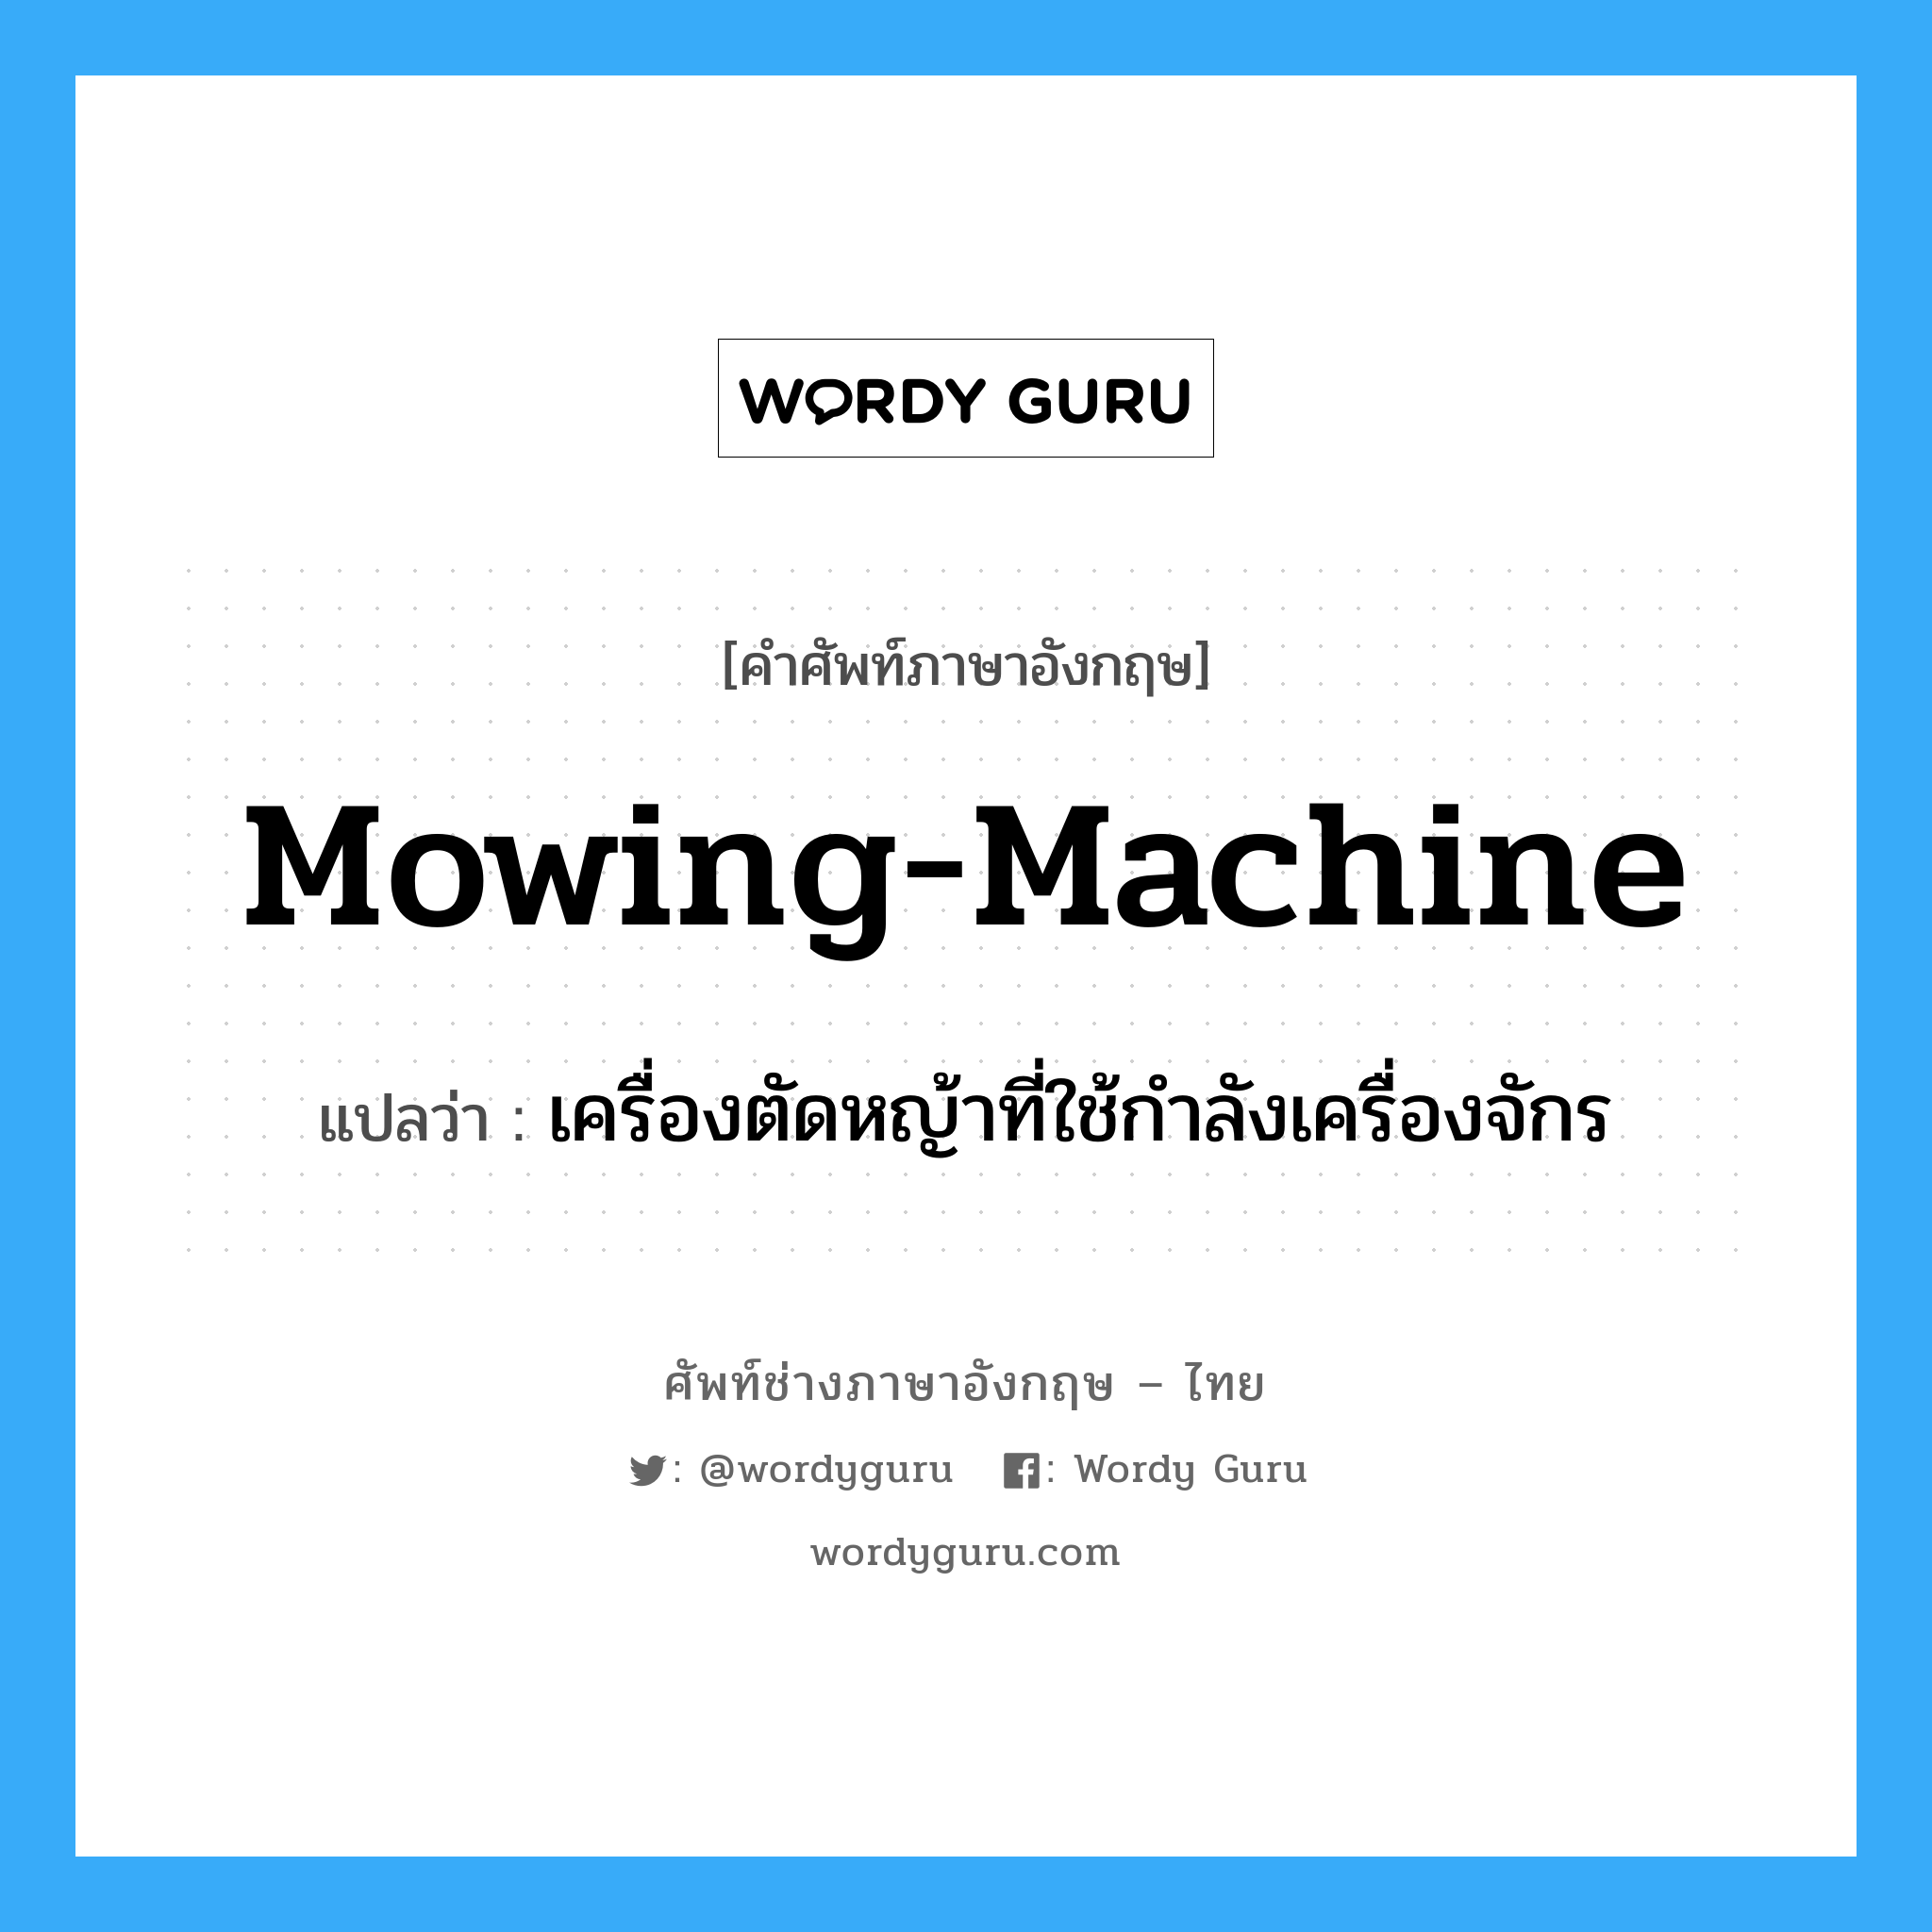 mowing-machine แปลว่า?, คำศัพท์ช่างภาษาอังกฤษ - ไทย mowing-machine คำศัพท์ภาษาอังกฤษ mowing-machine แปลว่า เครื่องตัดหญ้าที่ใช้กำลังเครื่องจักร